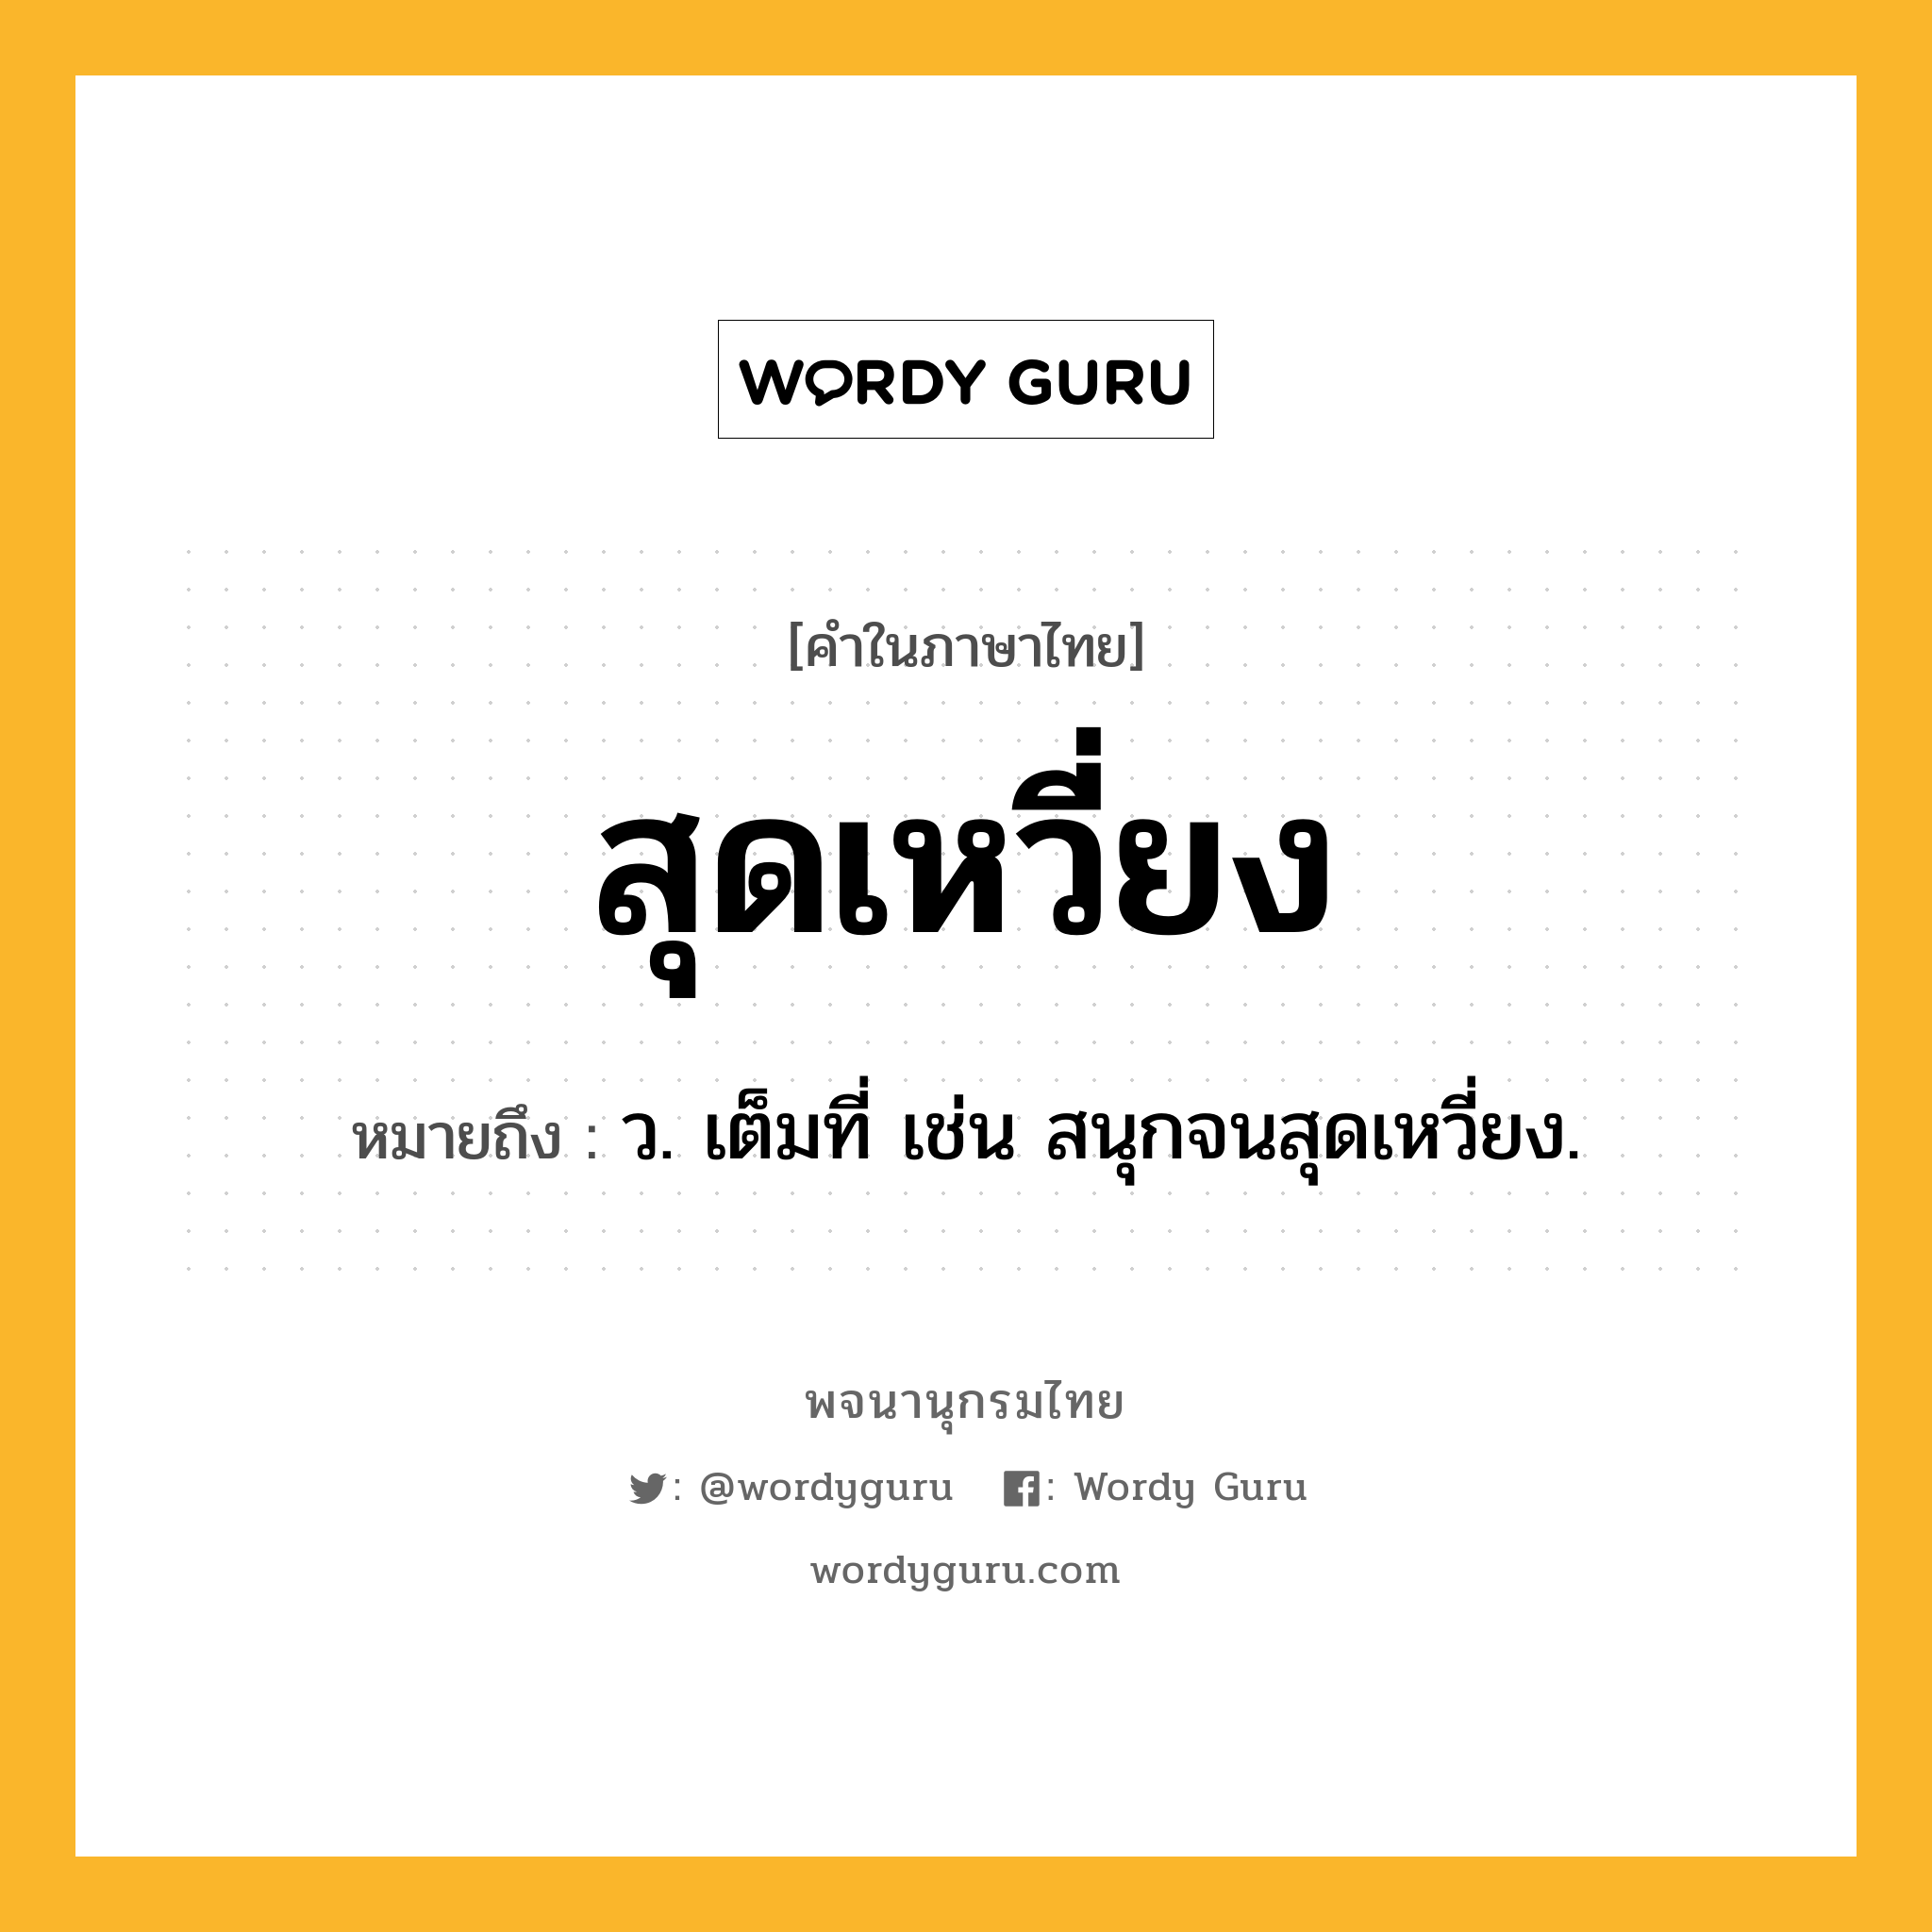 สุดเหวี่ยง หมายถึงอะไร?, คำในภาษาไทย สุดเหวี่ยง หมายถึง ว. เต็มที่ เช่น สนุกจนสุดเหวี่ยง.